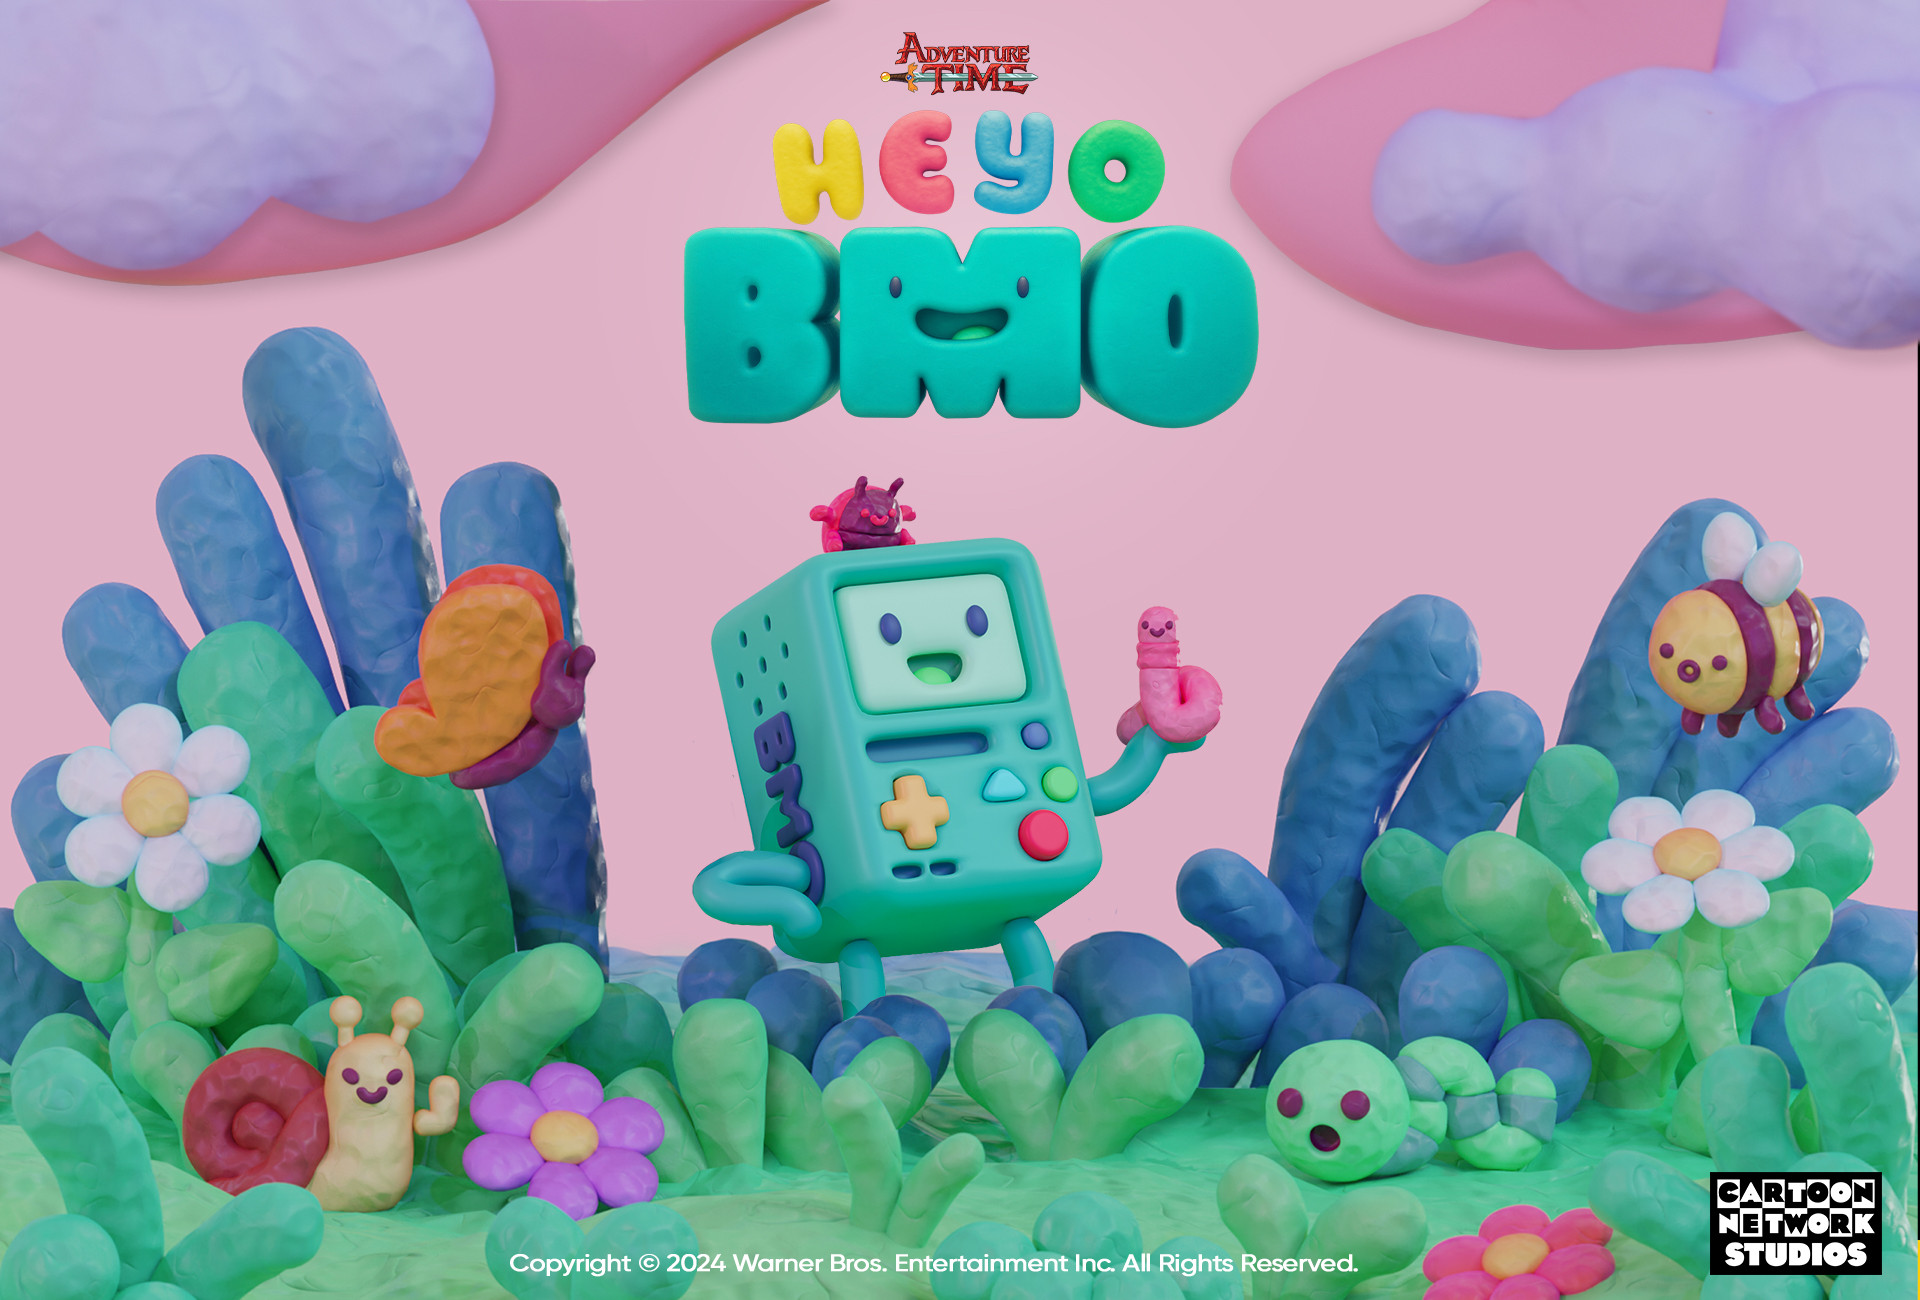 Adventure Time: Heyo BMO (Divulgação / Cartoon Network Studios)